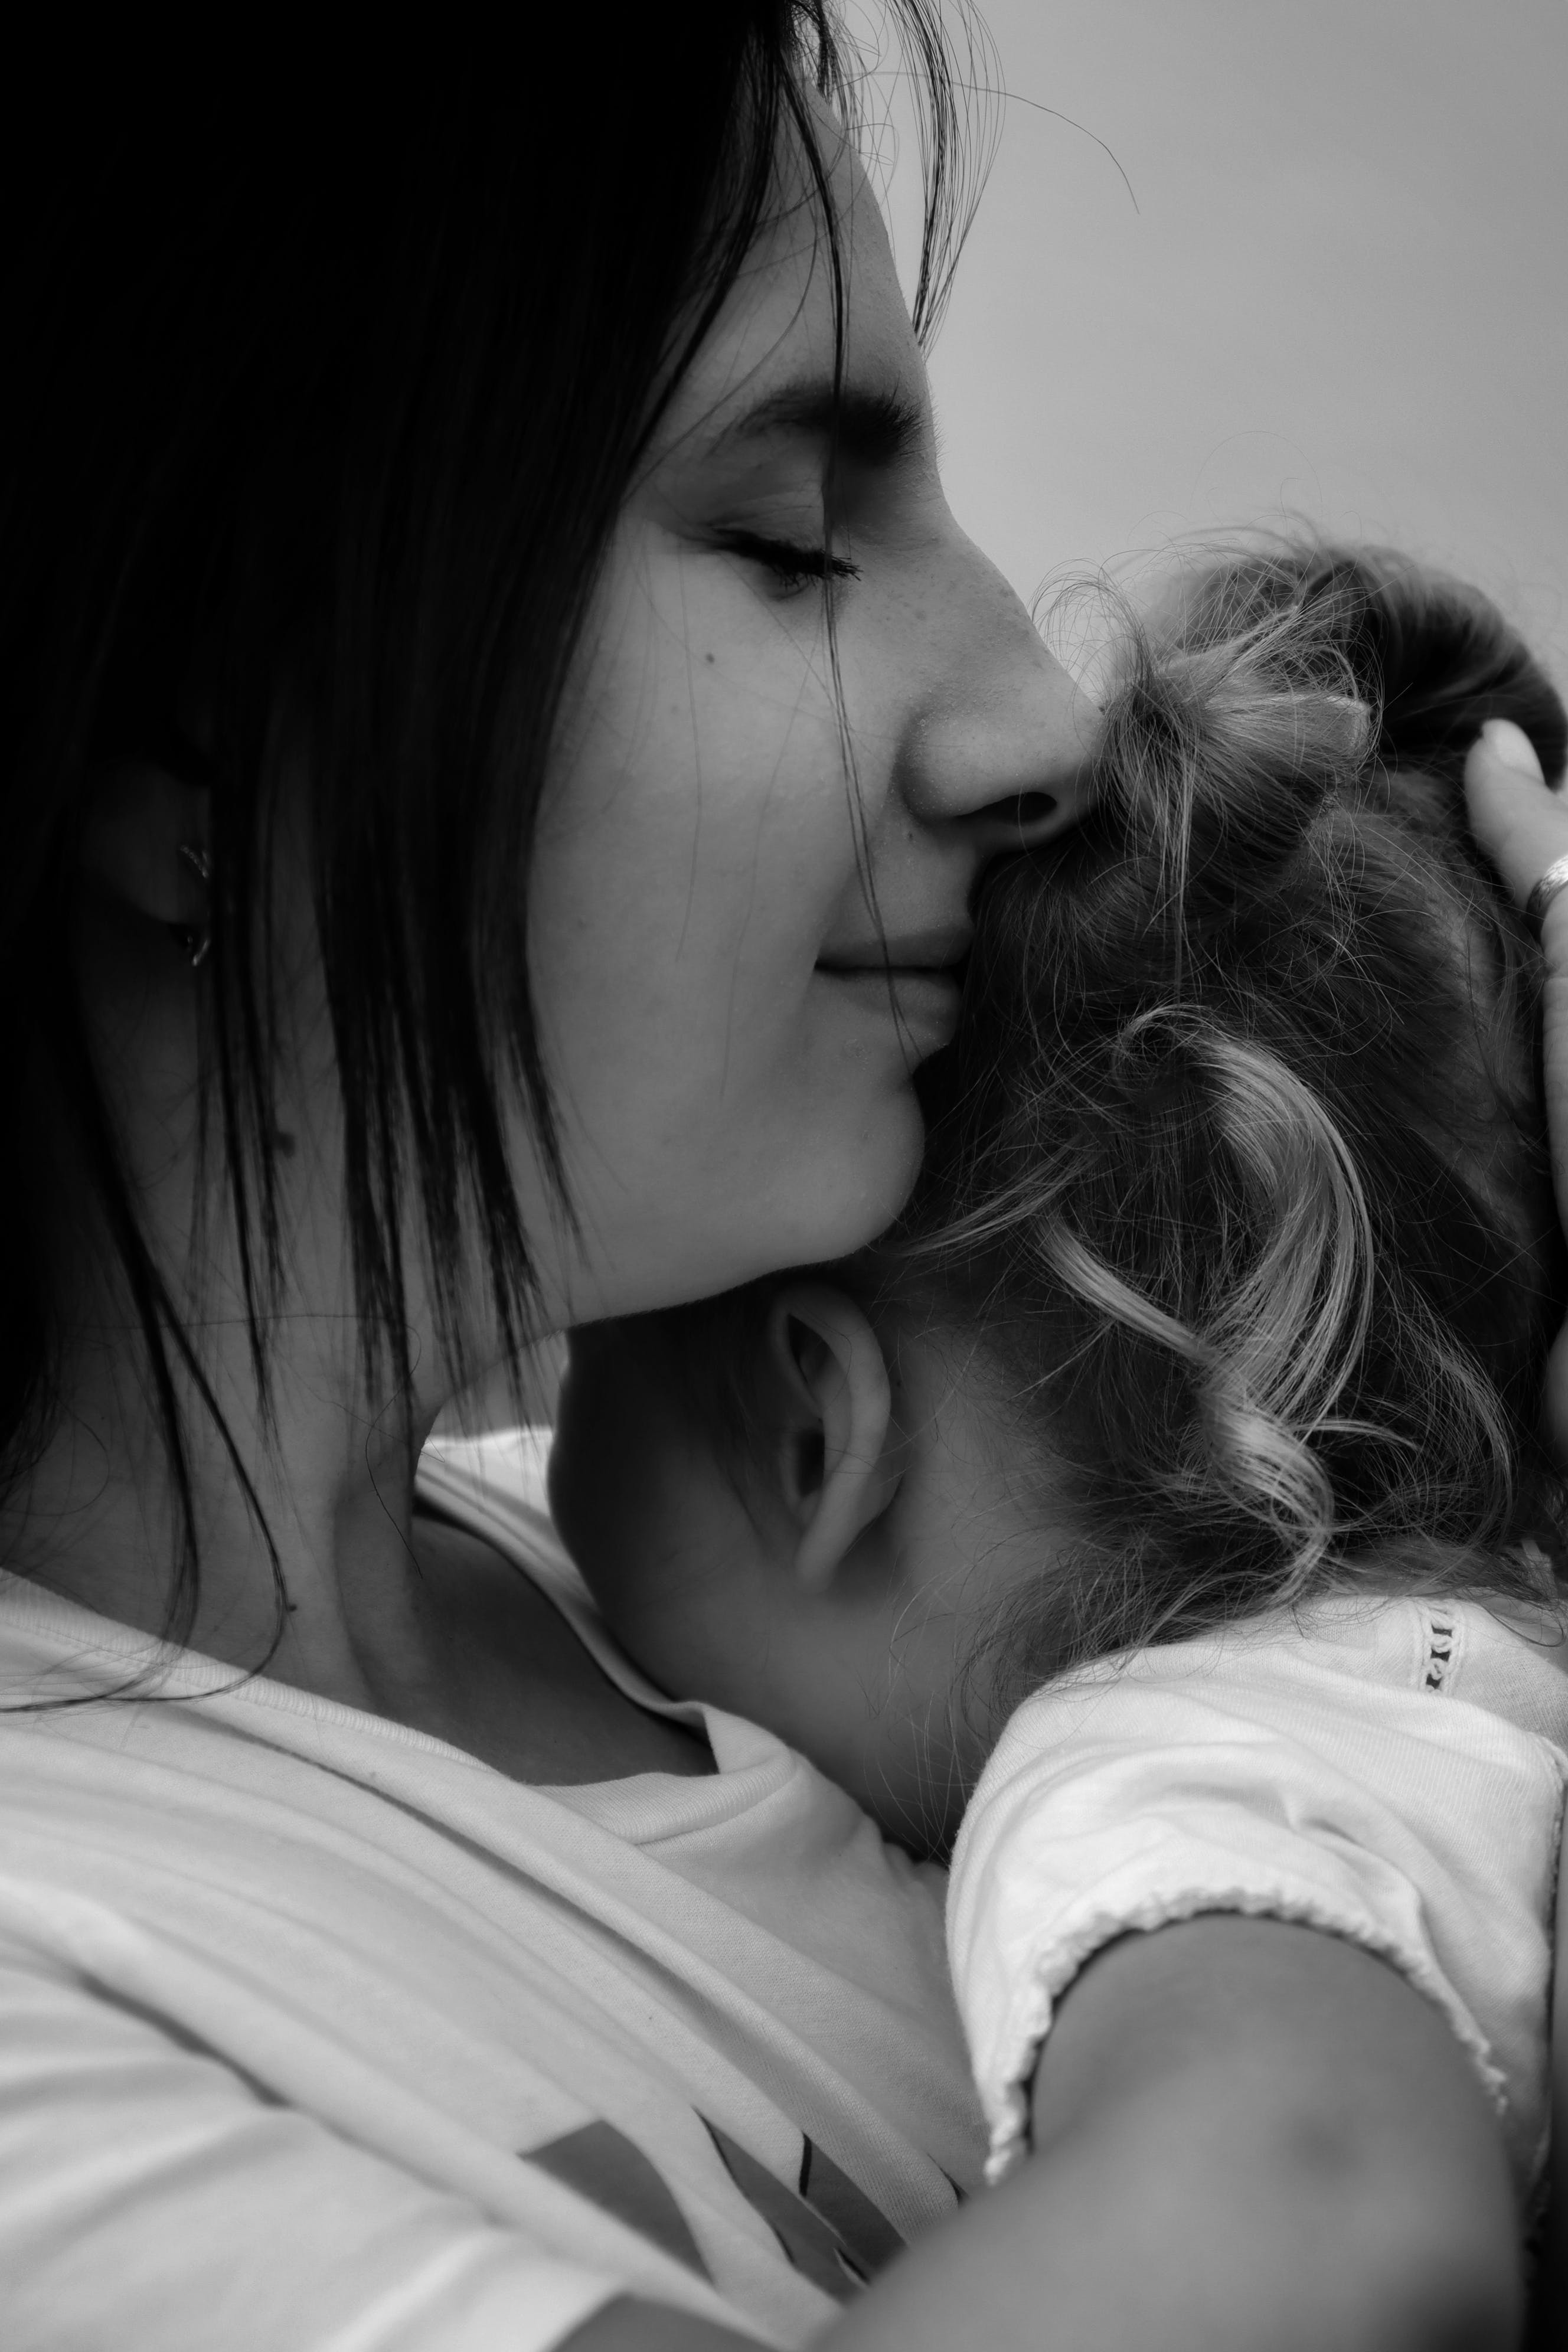 "Die unbeugsame Liebe einer Mutter: Ein Weg ohne Impfung, voller Mut und Hingabe"